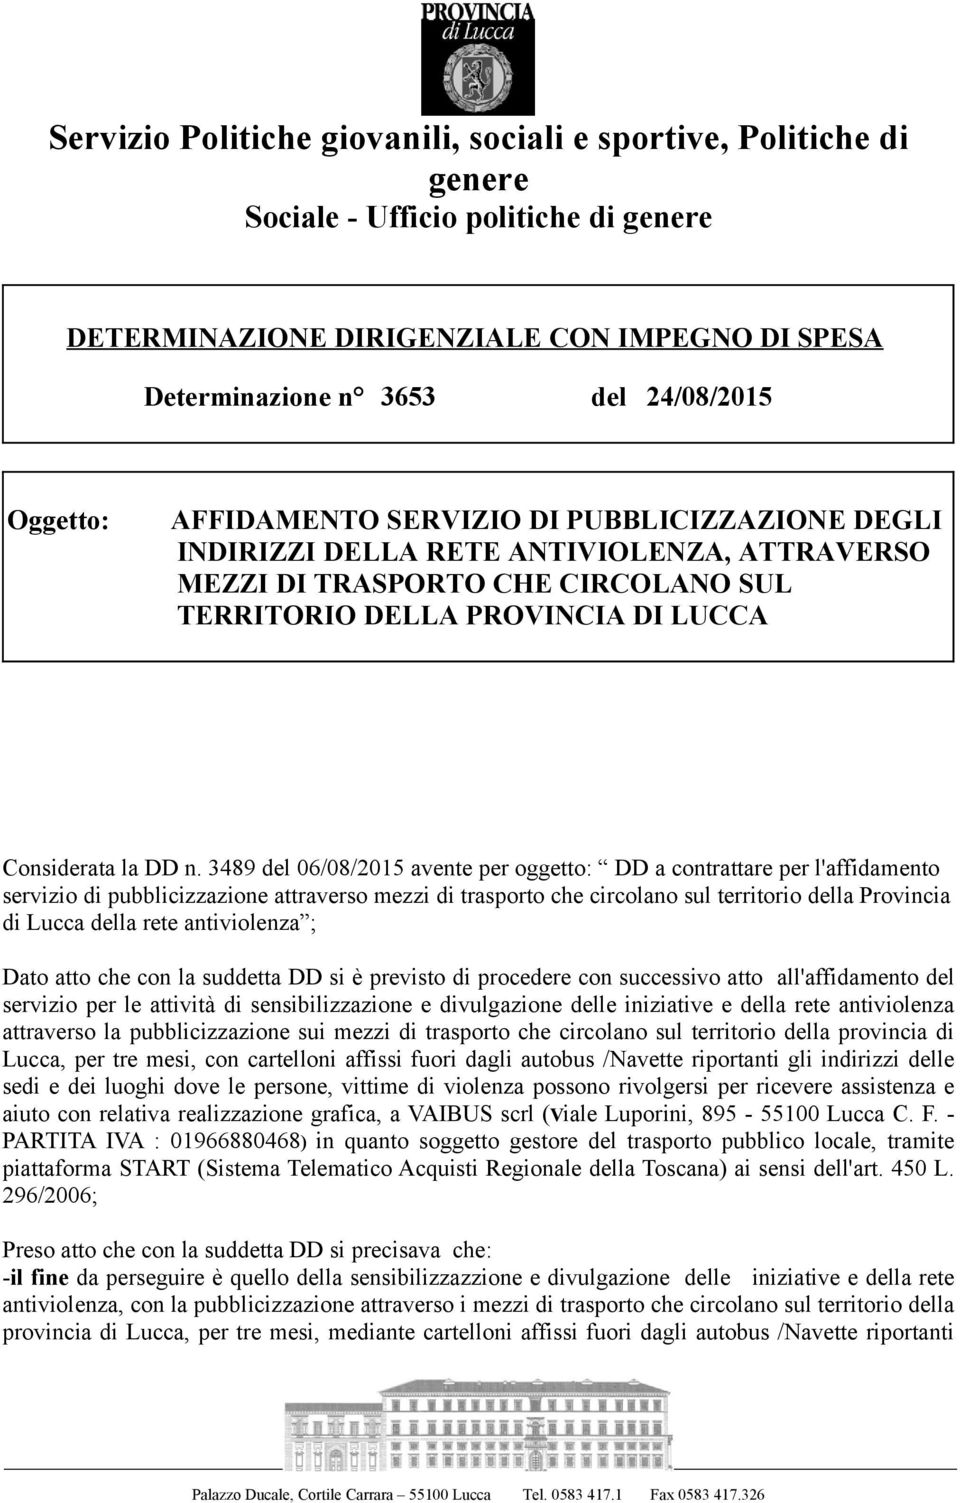 3489 del 06/08/2015 avente per oggetto: DD a contrattare per l'affidamento servizio di pubblicizzazione attraverso mezzi di trasporto che circolano sul territorio della Provincia di Lucca della rete